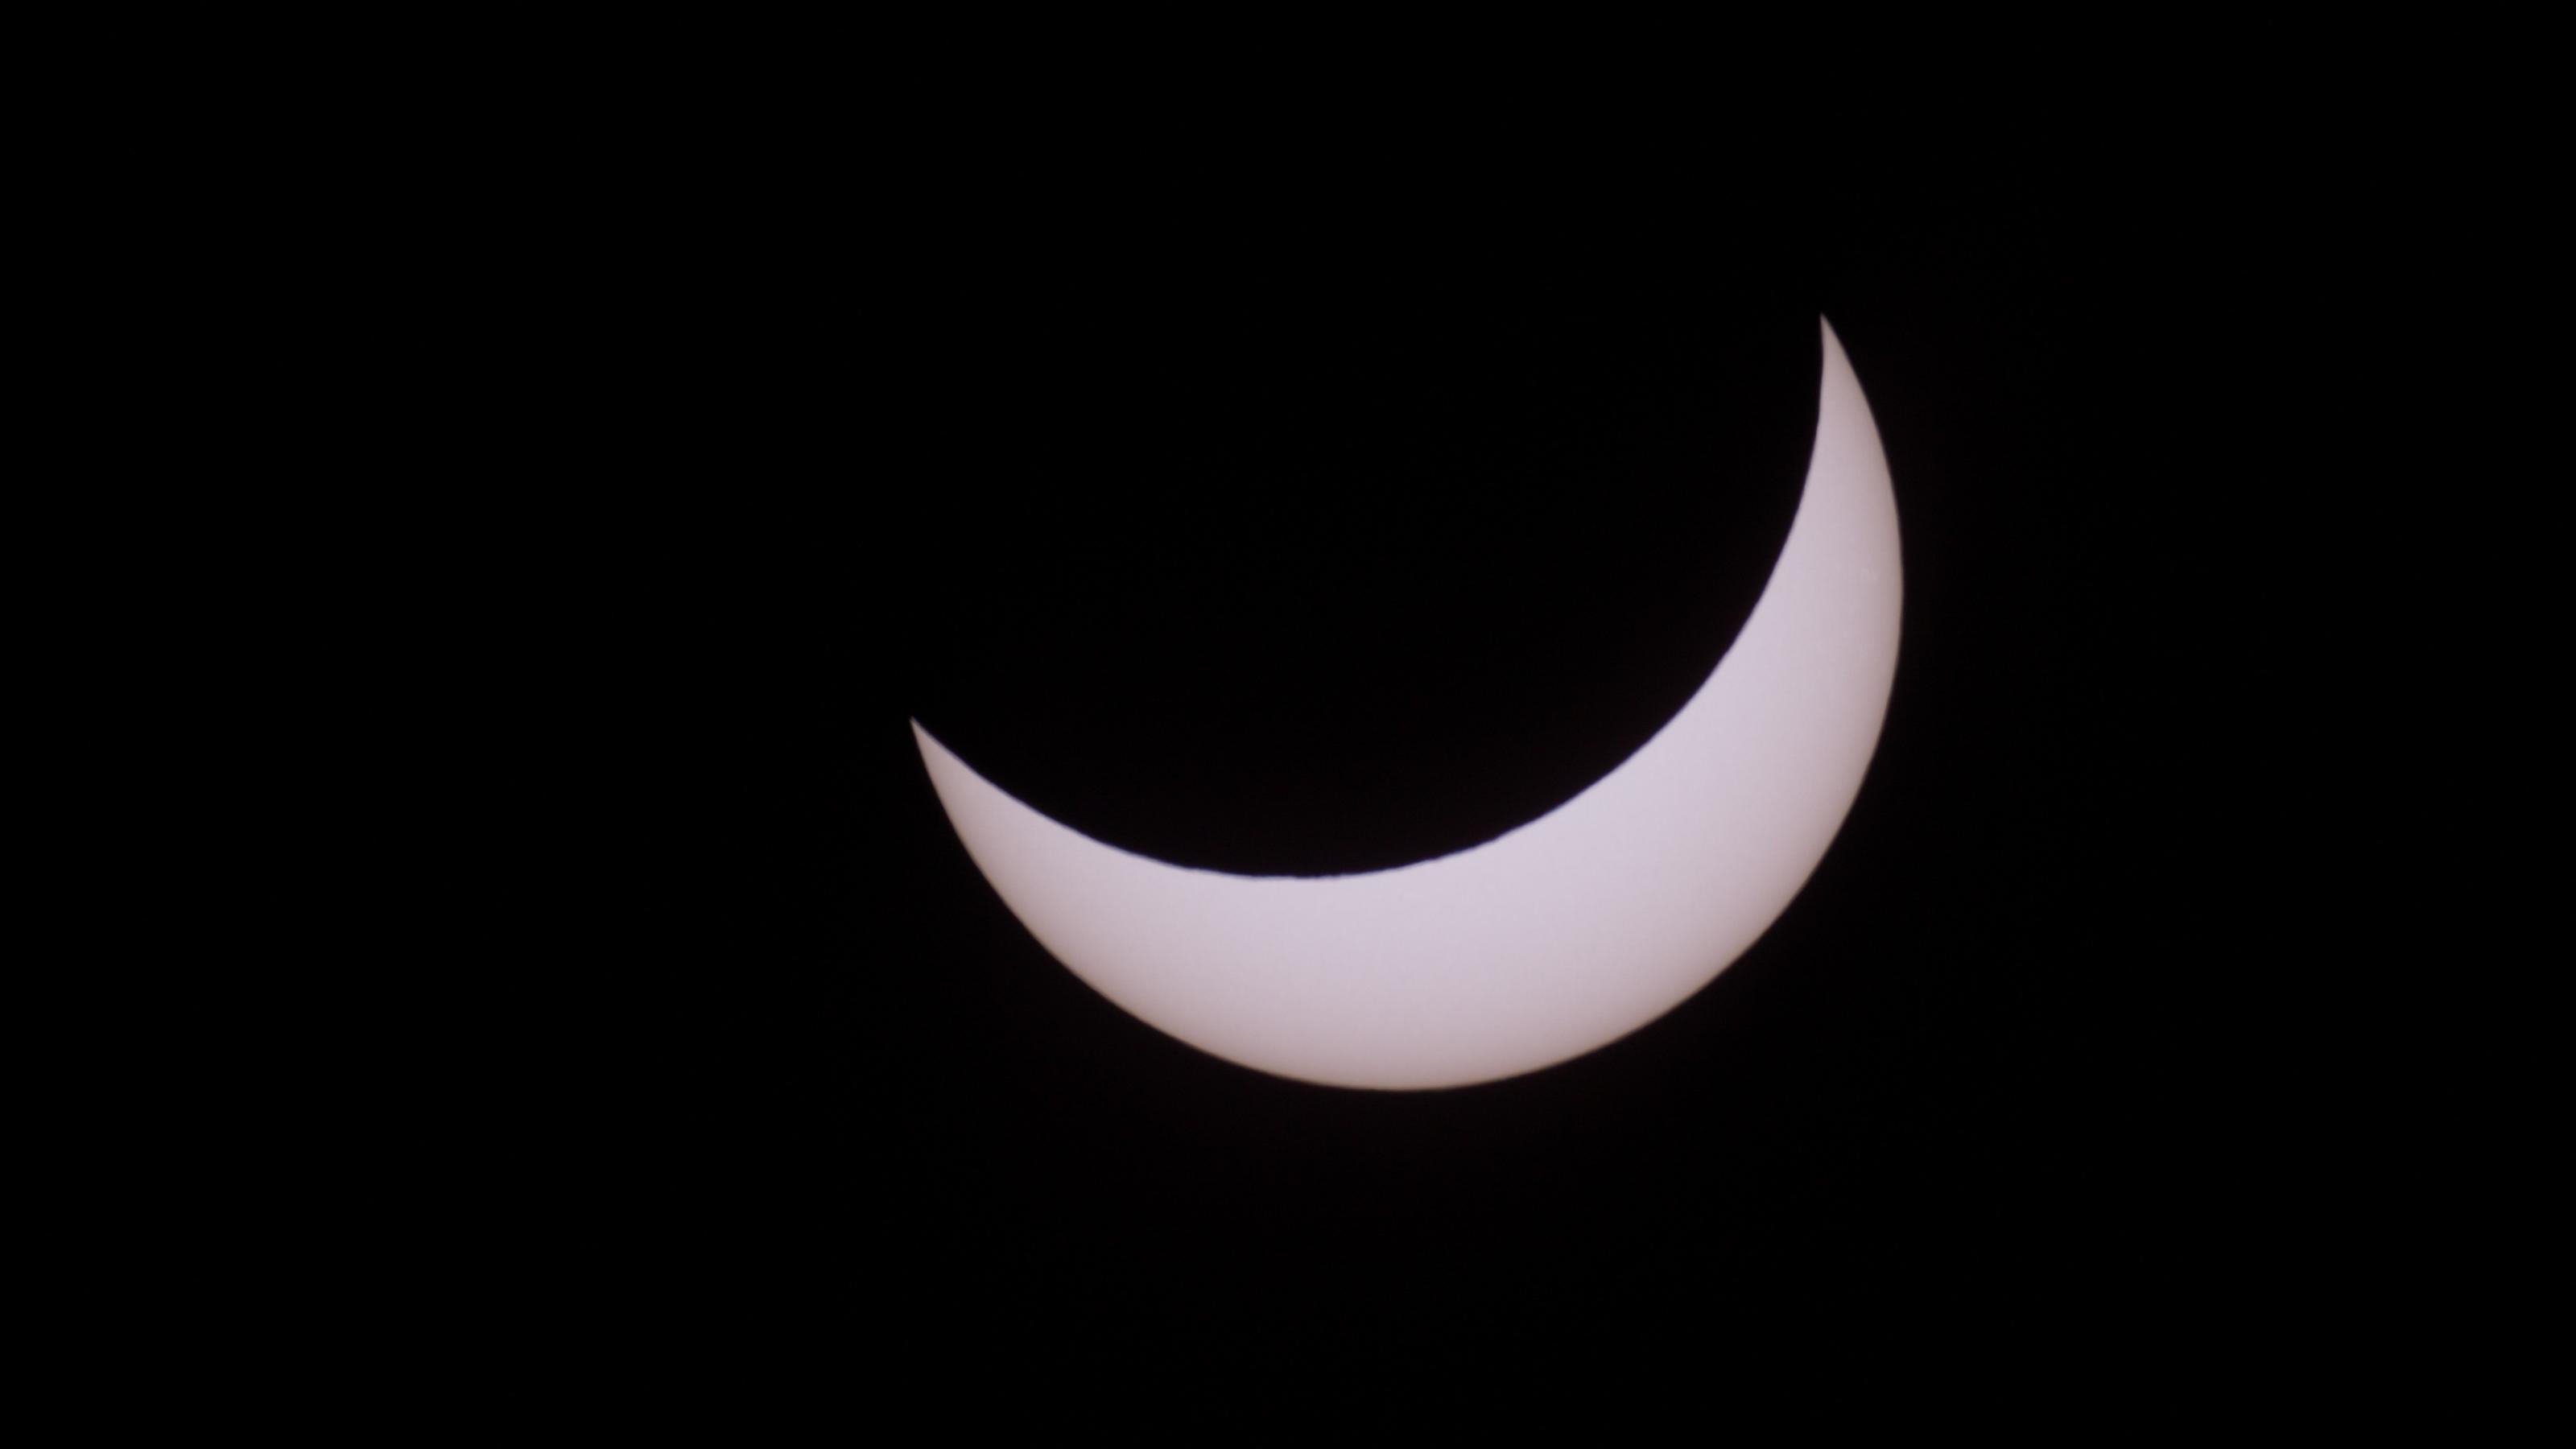 Auf dem Bild ist eine gelblich-weiße, sichelartige Sonne vor schwarzem Hintergrund zu sehen, da sie teilweise vom Mond bedeckt ist.